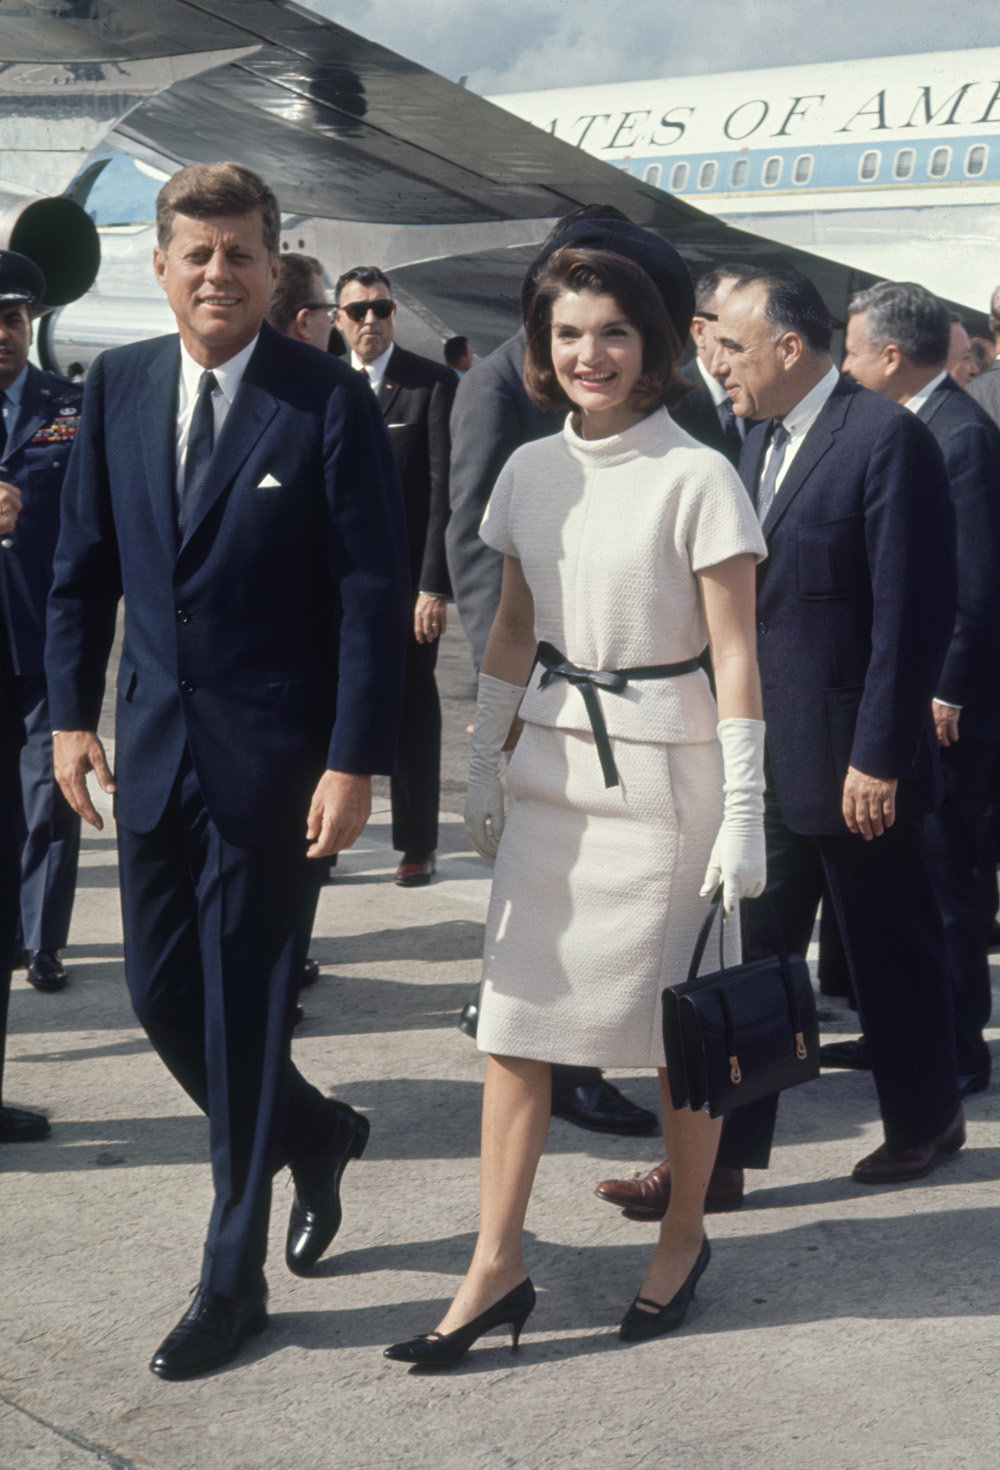 1963년 존 F 케네디 대통령 부부가 텍사스를 방문한 모습. 케네디 대통령은 투버튼 양복, 재클린 여사는 샤넬 투피스를 입었다. 다음날 케네디 대통령은 댈러스에서 암살당했다. 존 F 케네디 대통령 도서관 홈페이지